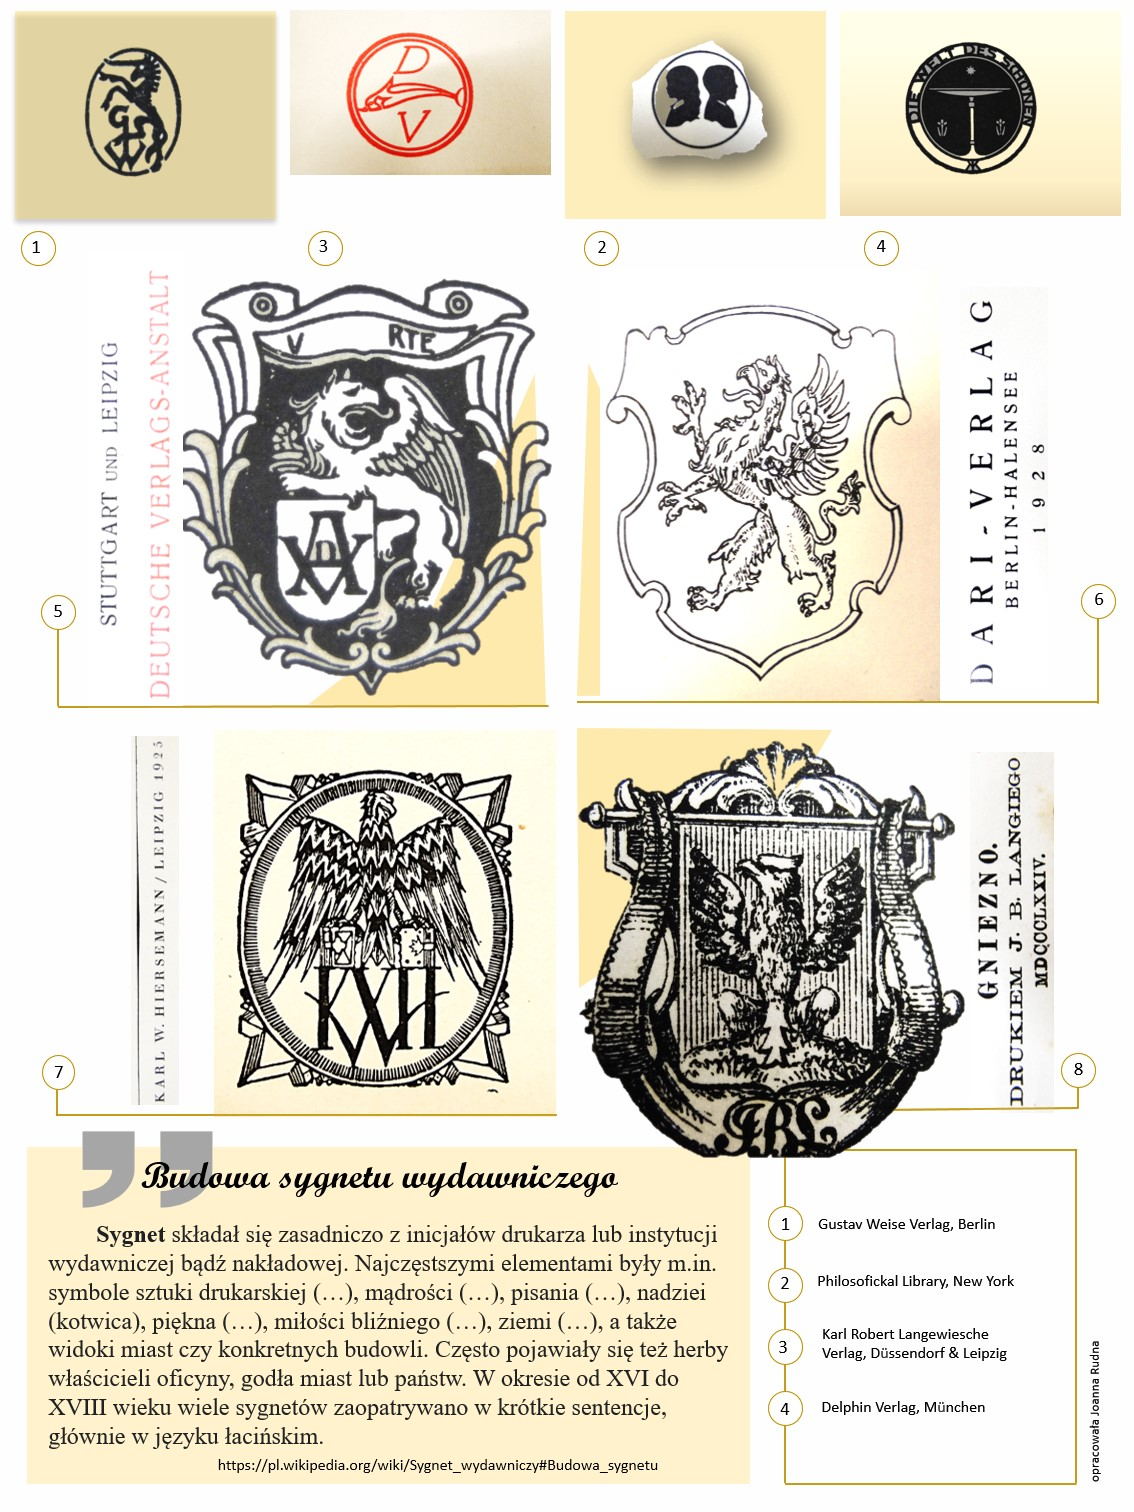 Plakat omawiający budowę sygnetu wydawniczego z ilustracjami prezentującymi przykładowe znaki